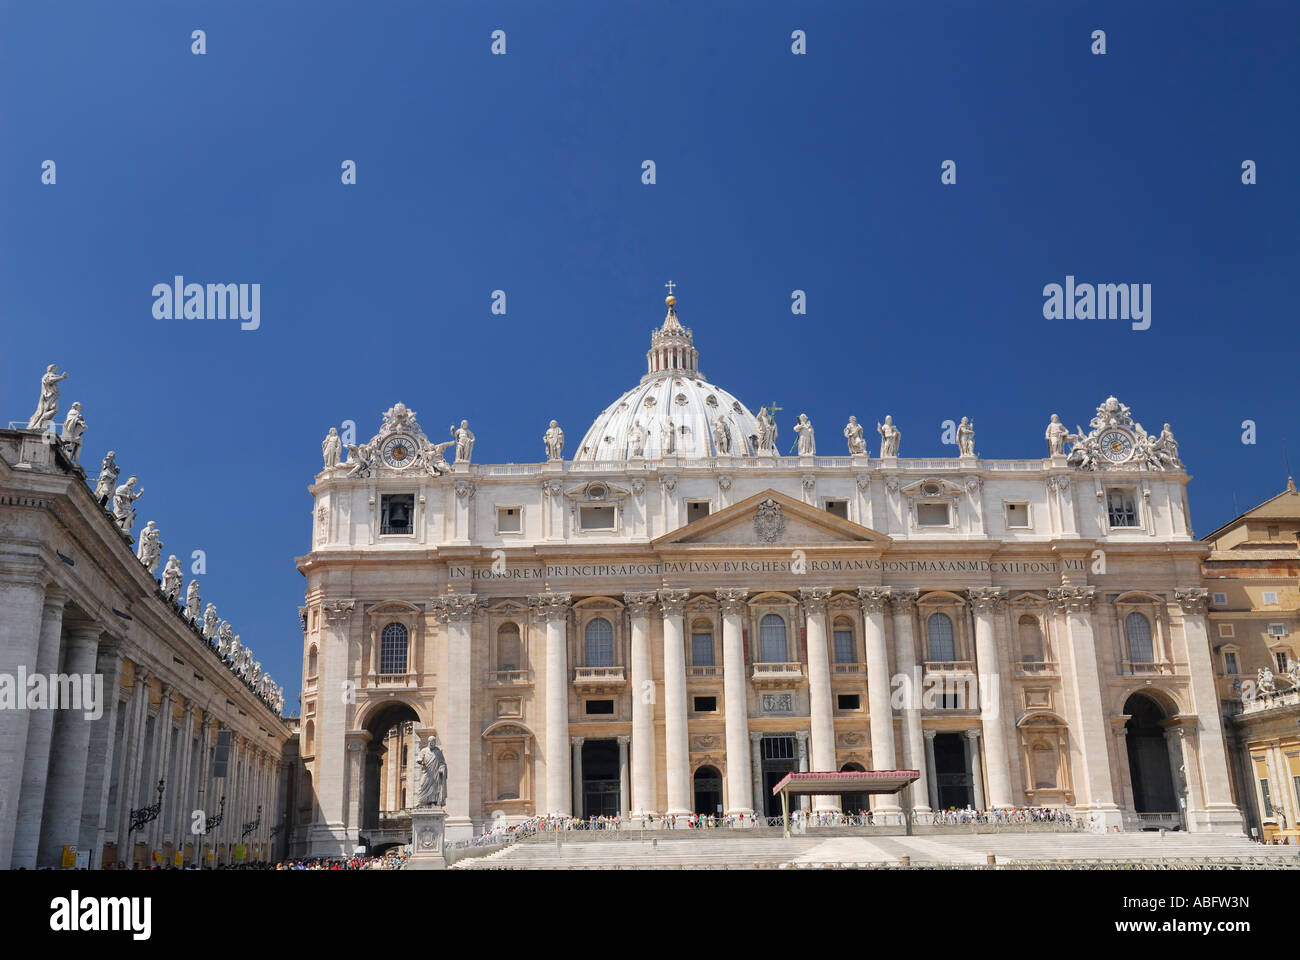 Fassade des St Peters päpstliche Basilika römisch-katholische Kathedrale und Platz im Vatikan in Rom Italien Stockfoto